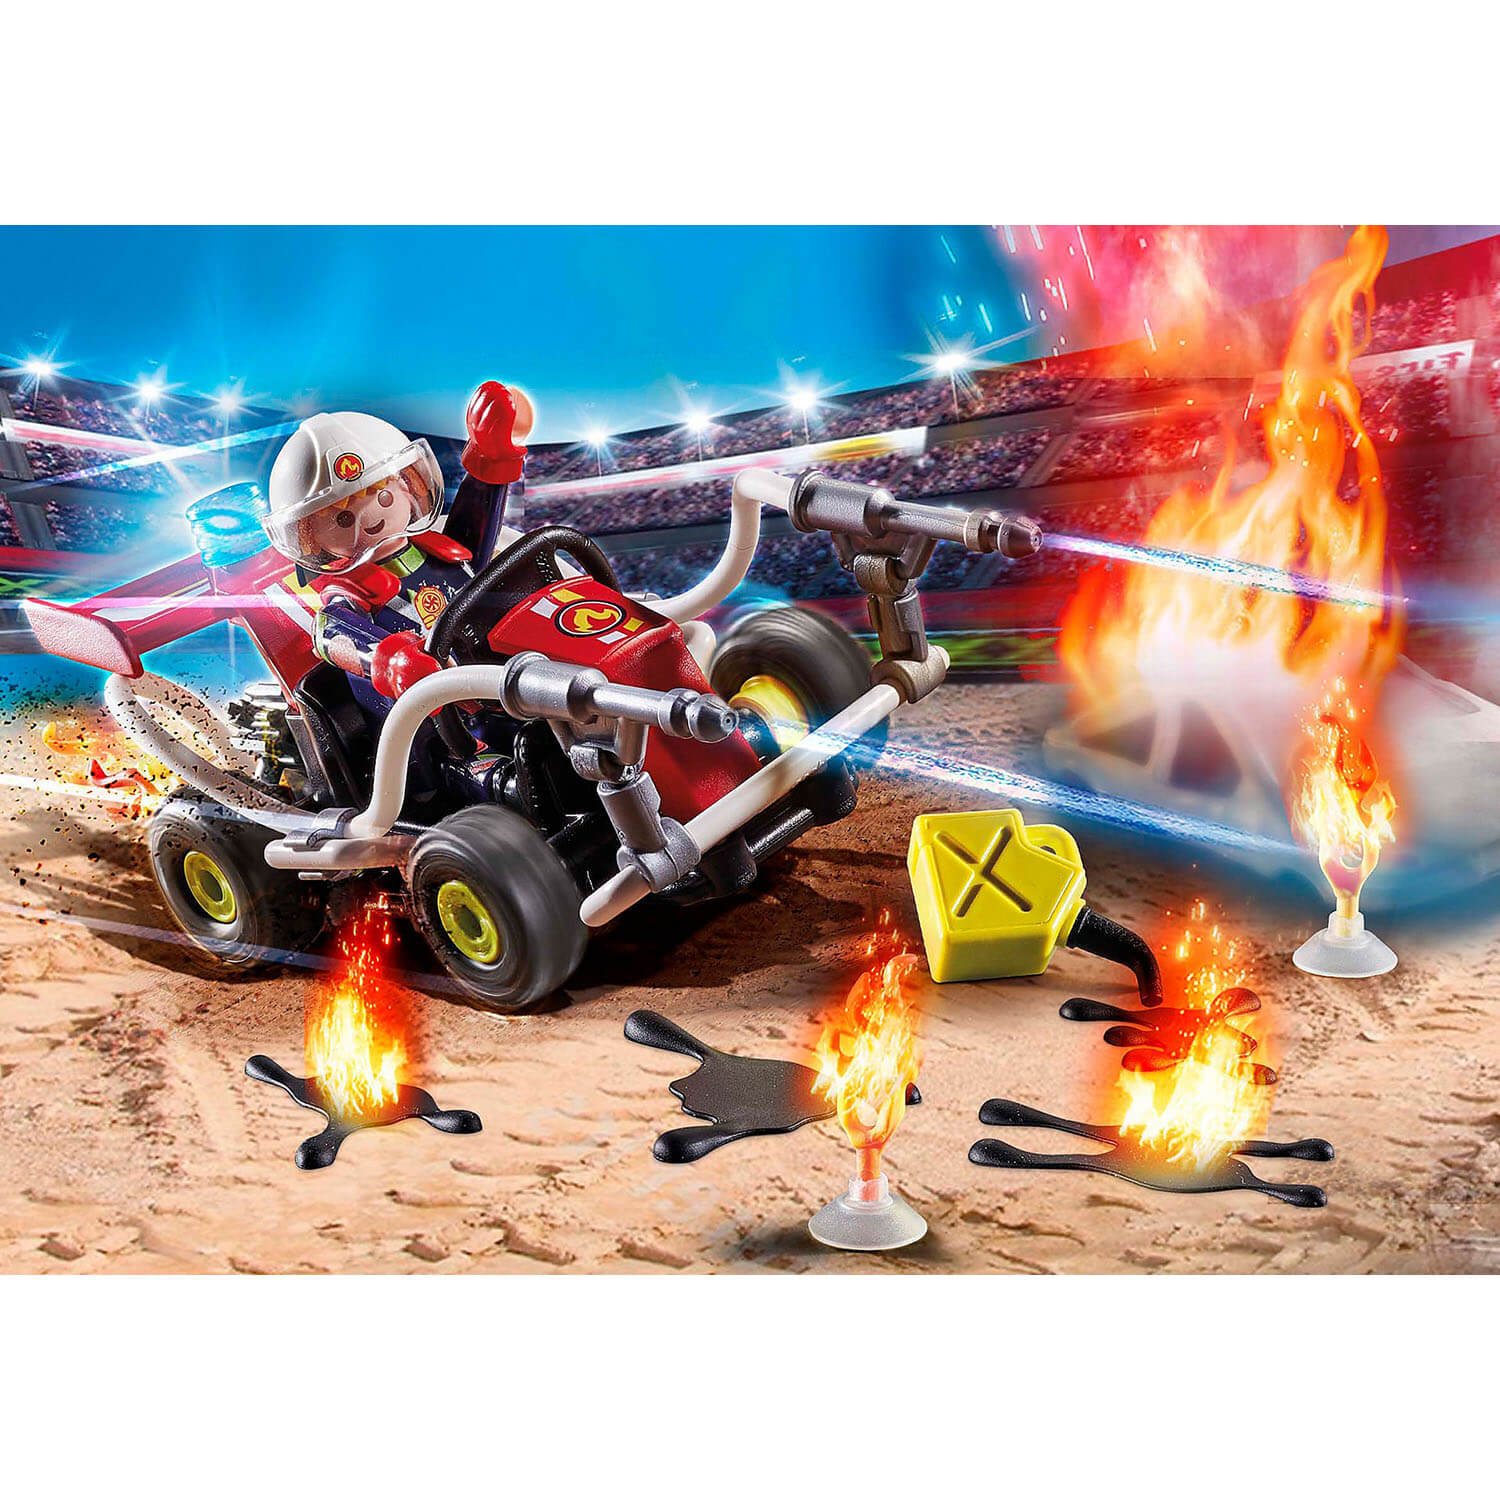 PLAYMOBIL Stunt Show Fire Quad (70554)